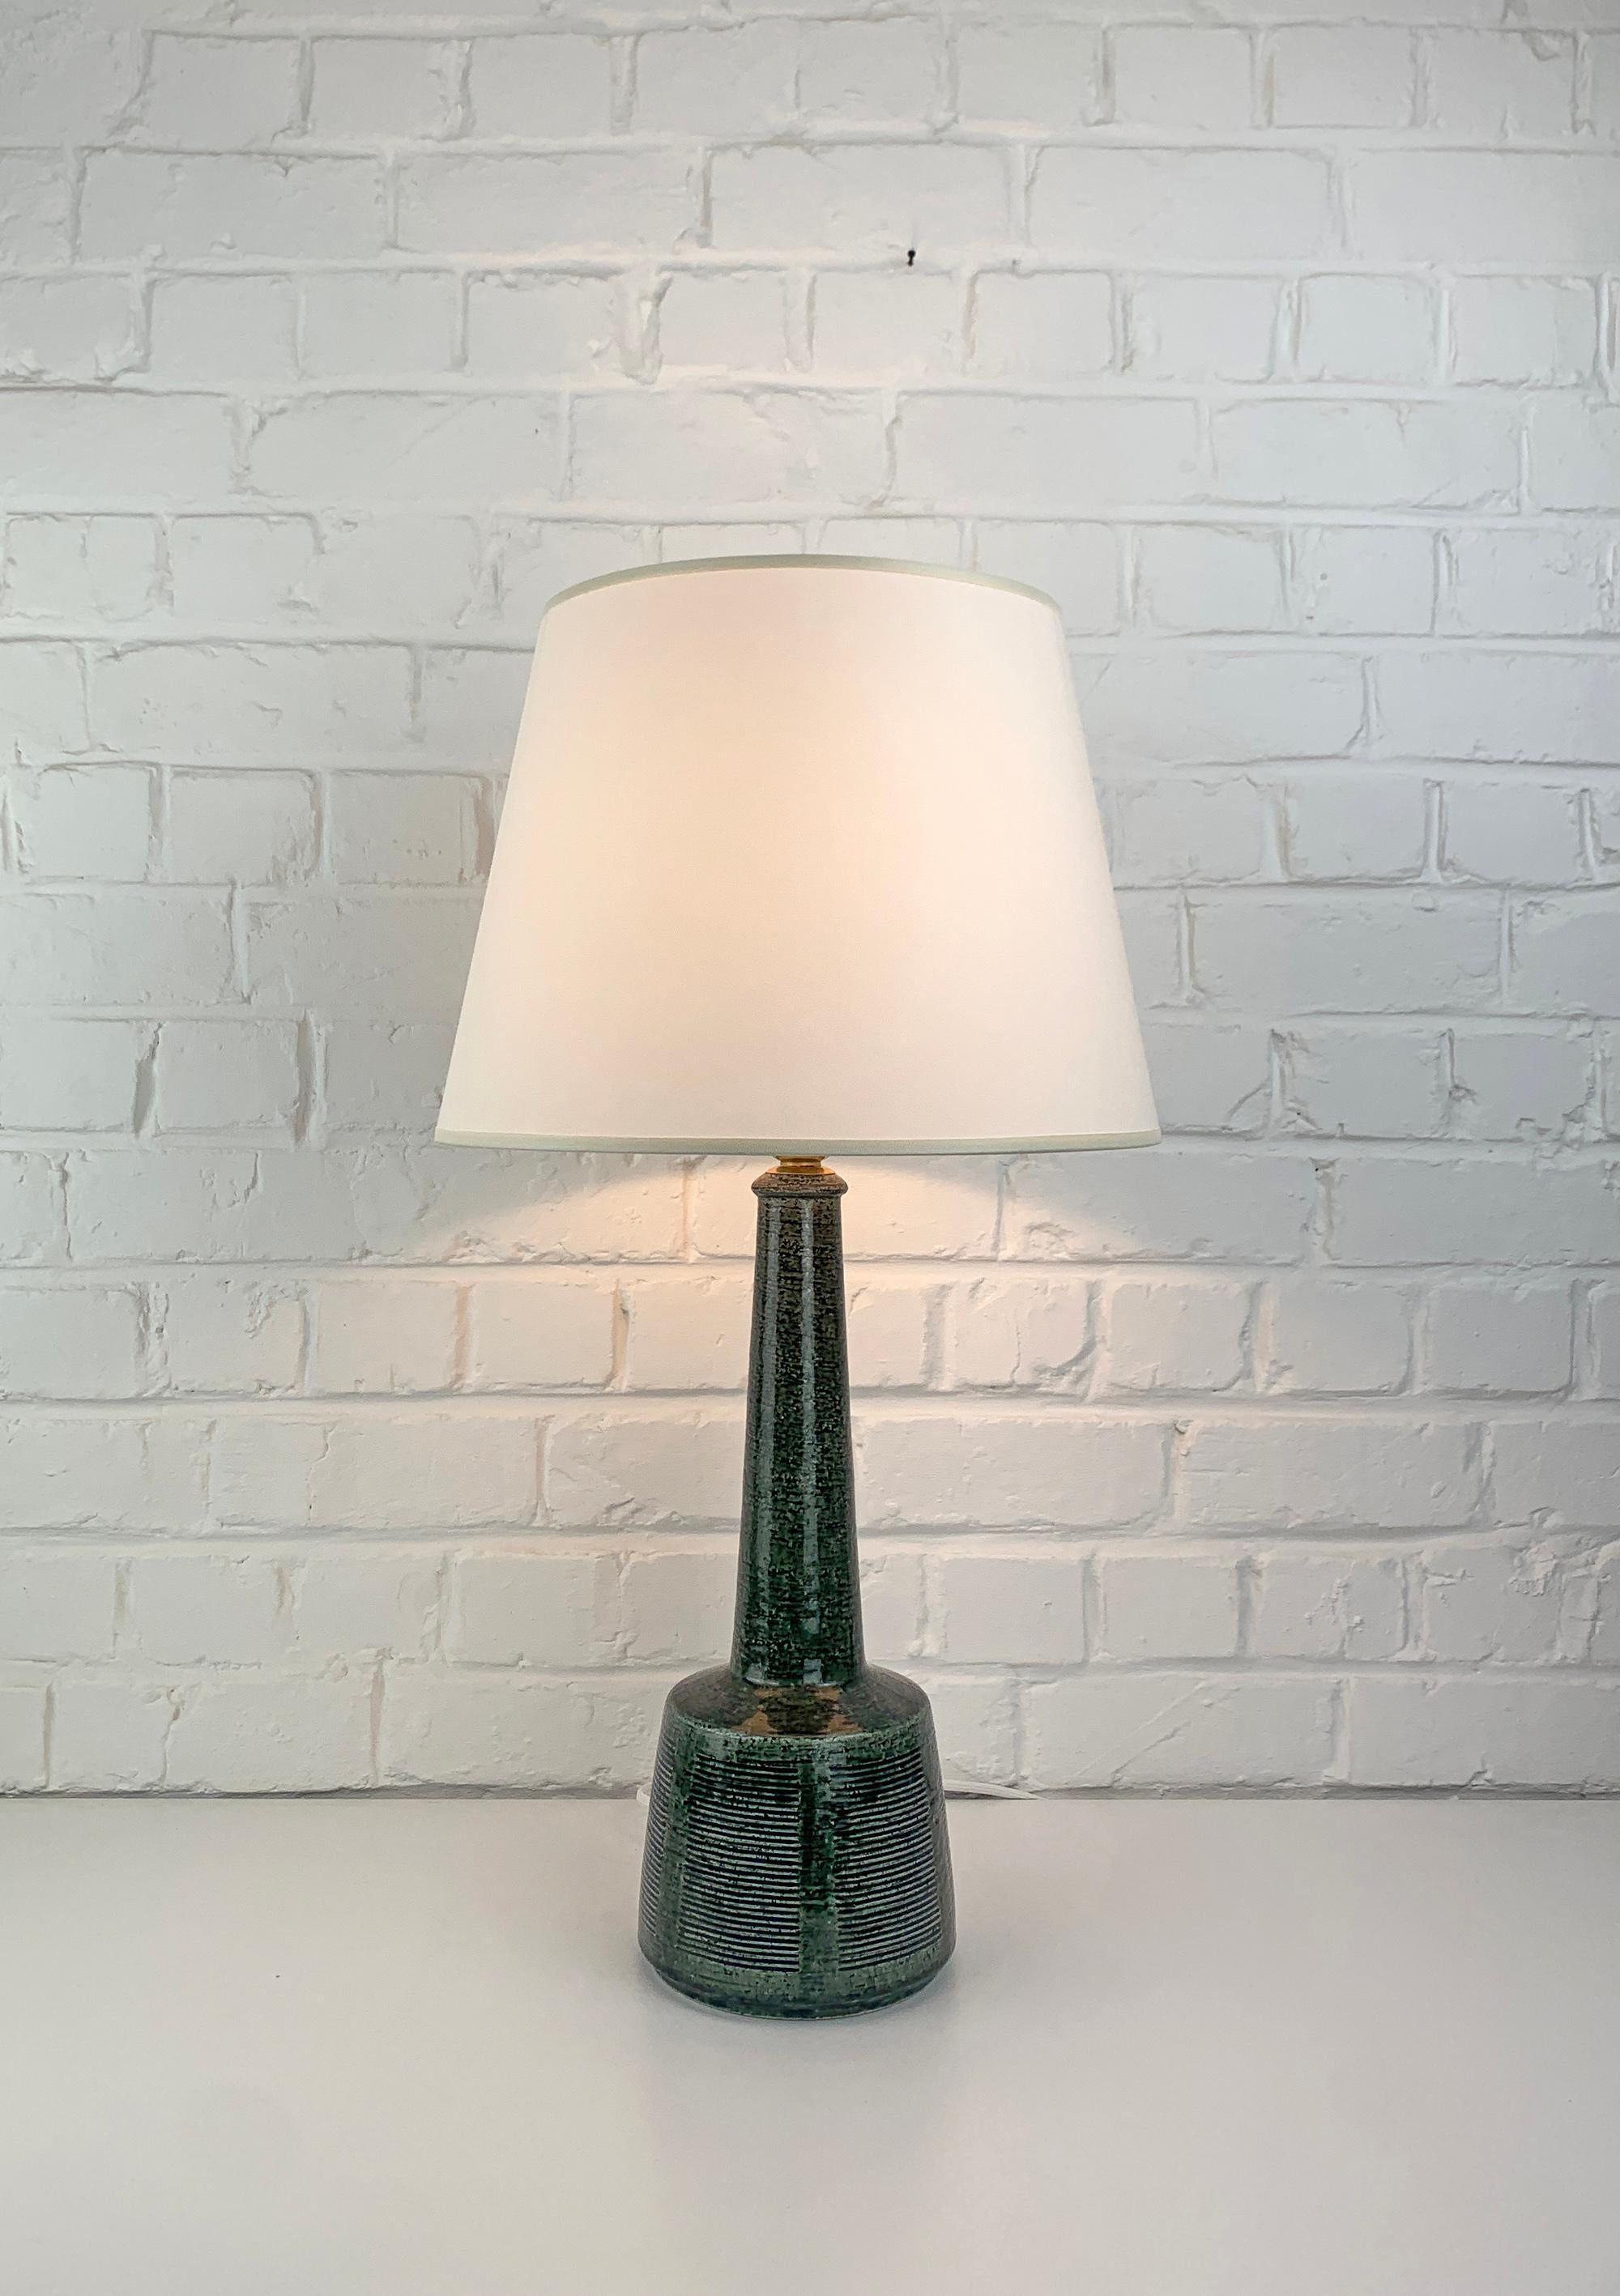 Scandinavian Modern Tall Ceramic table lamp by Palshus, Denmark, design by Esben Klint for Le Klint